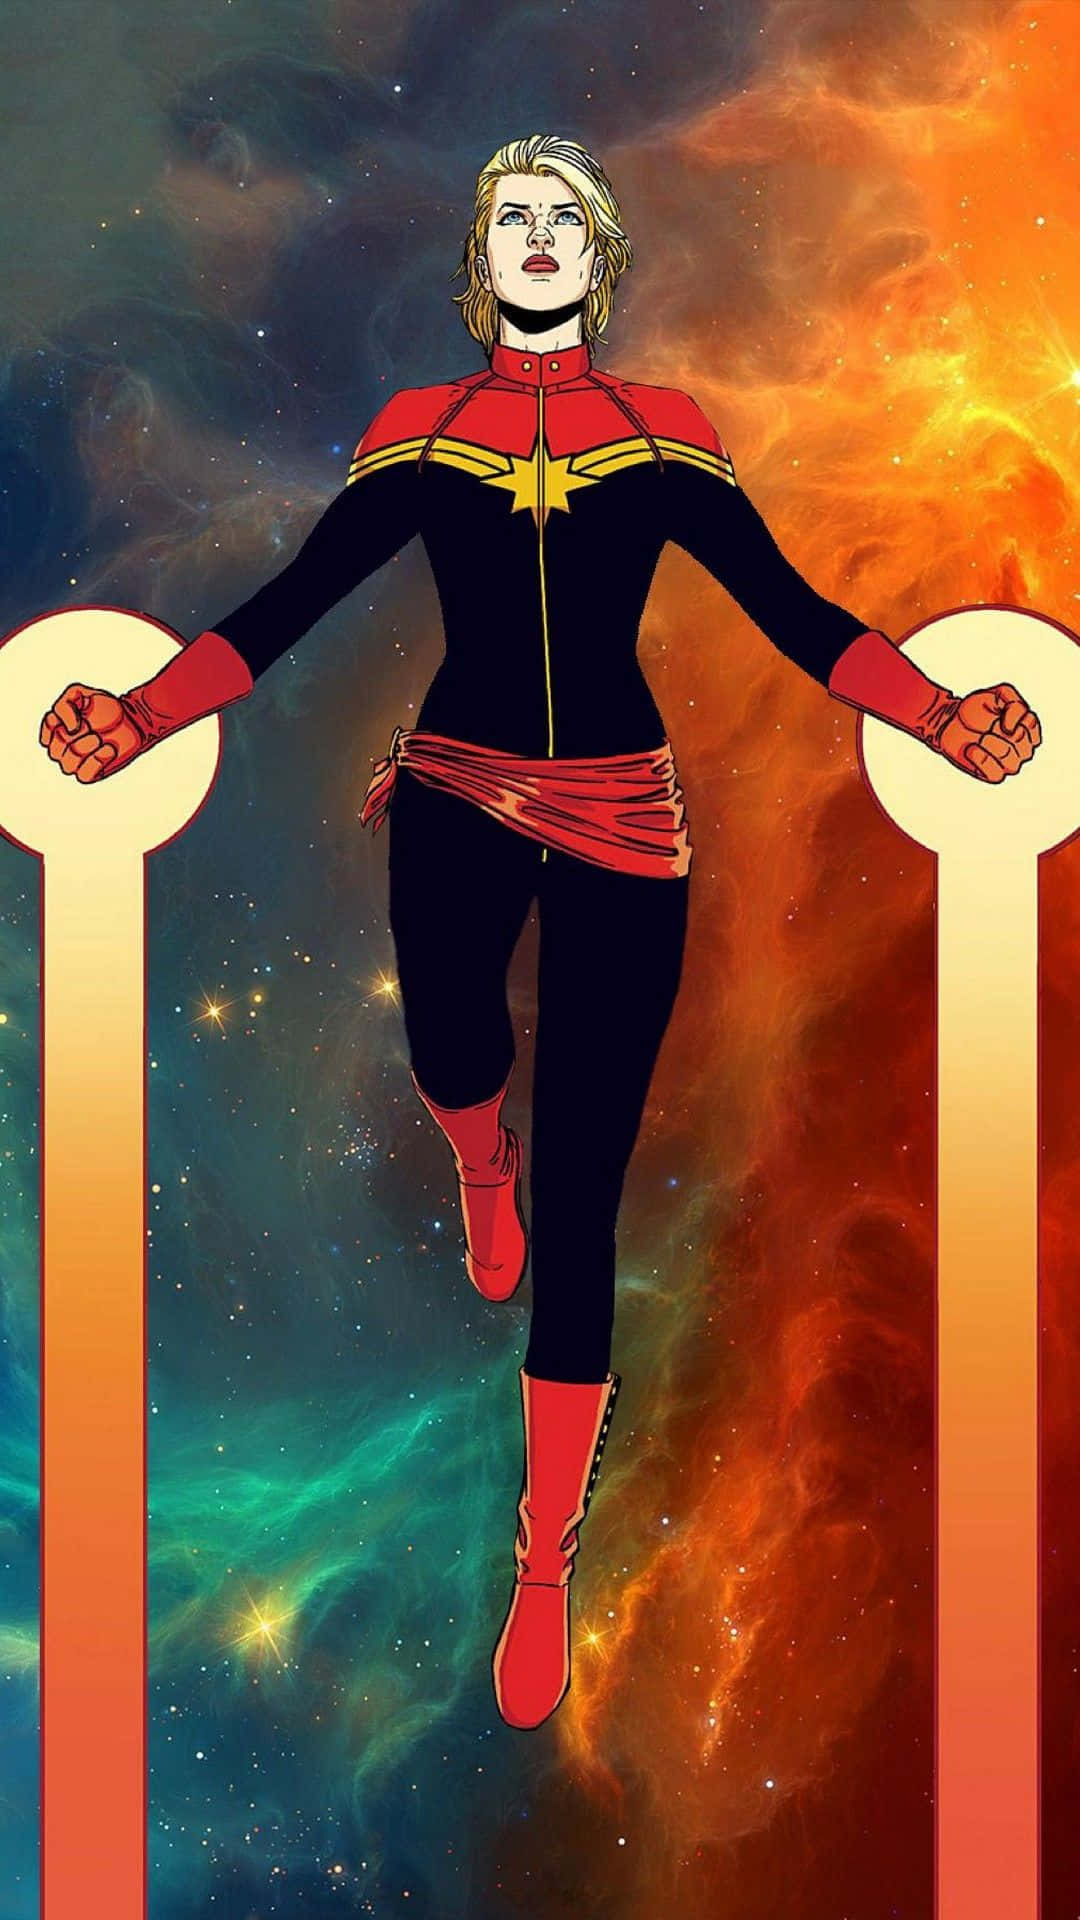 Androidbakgrund Med Captain Marvel Från Marvels Avengers Serietidning.